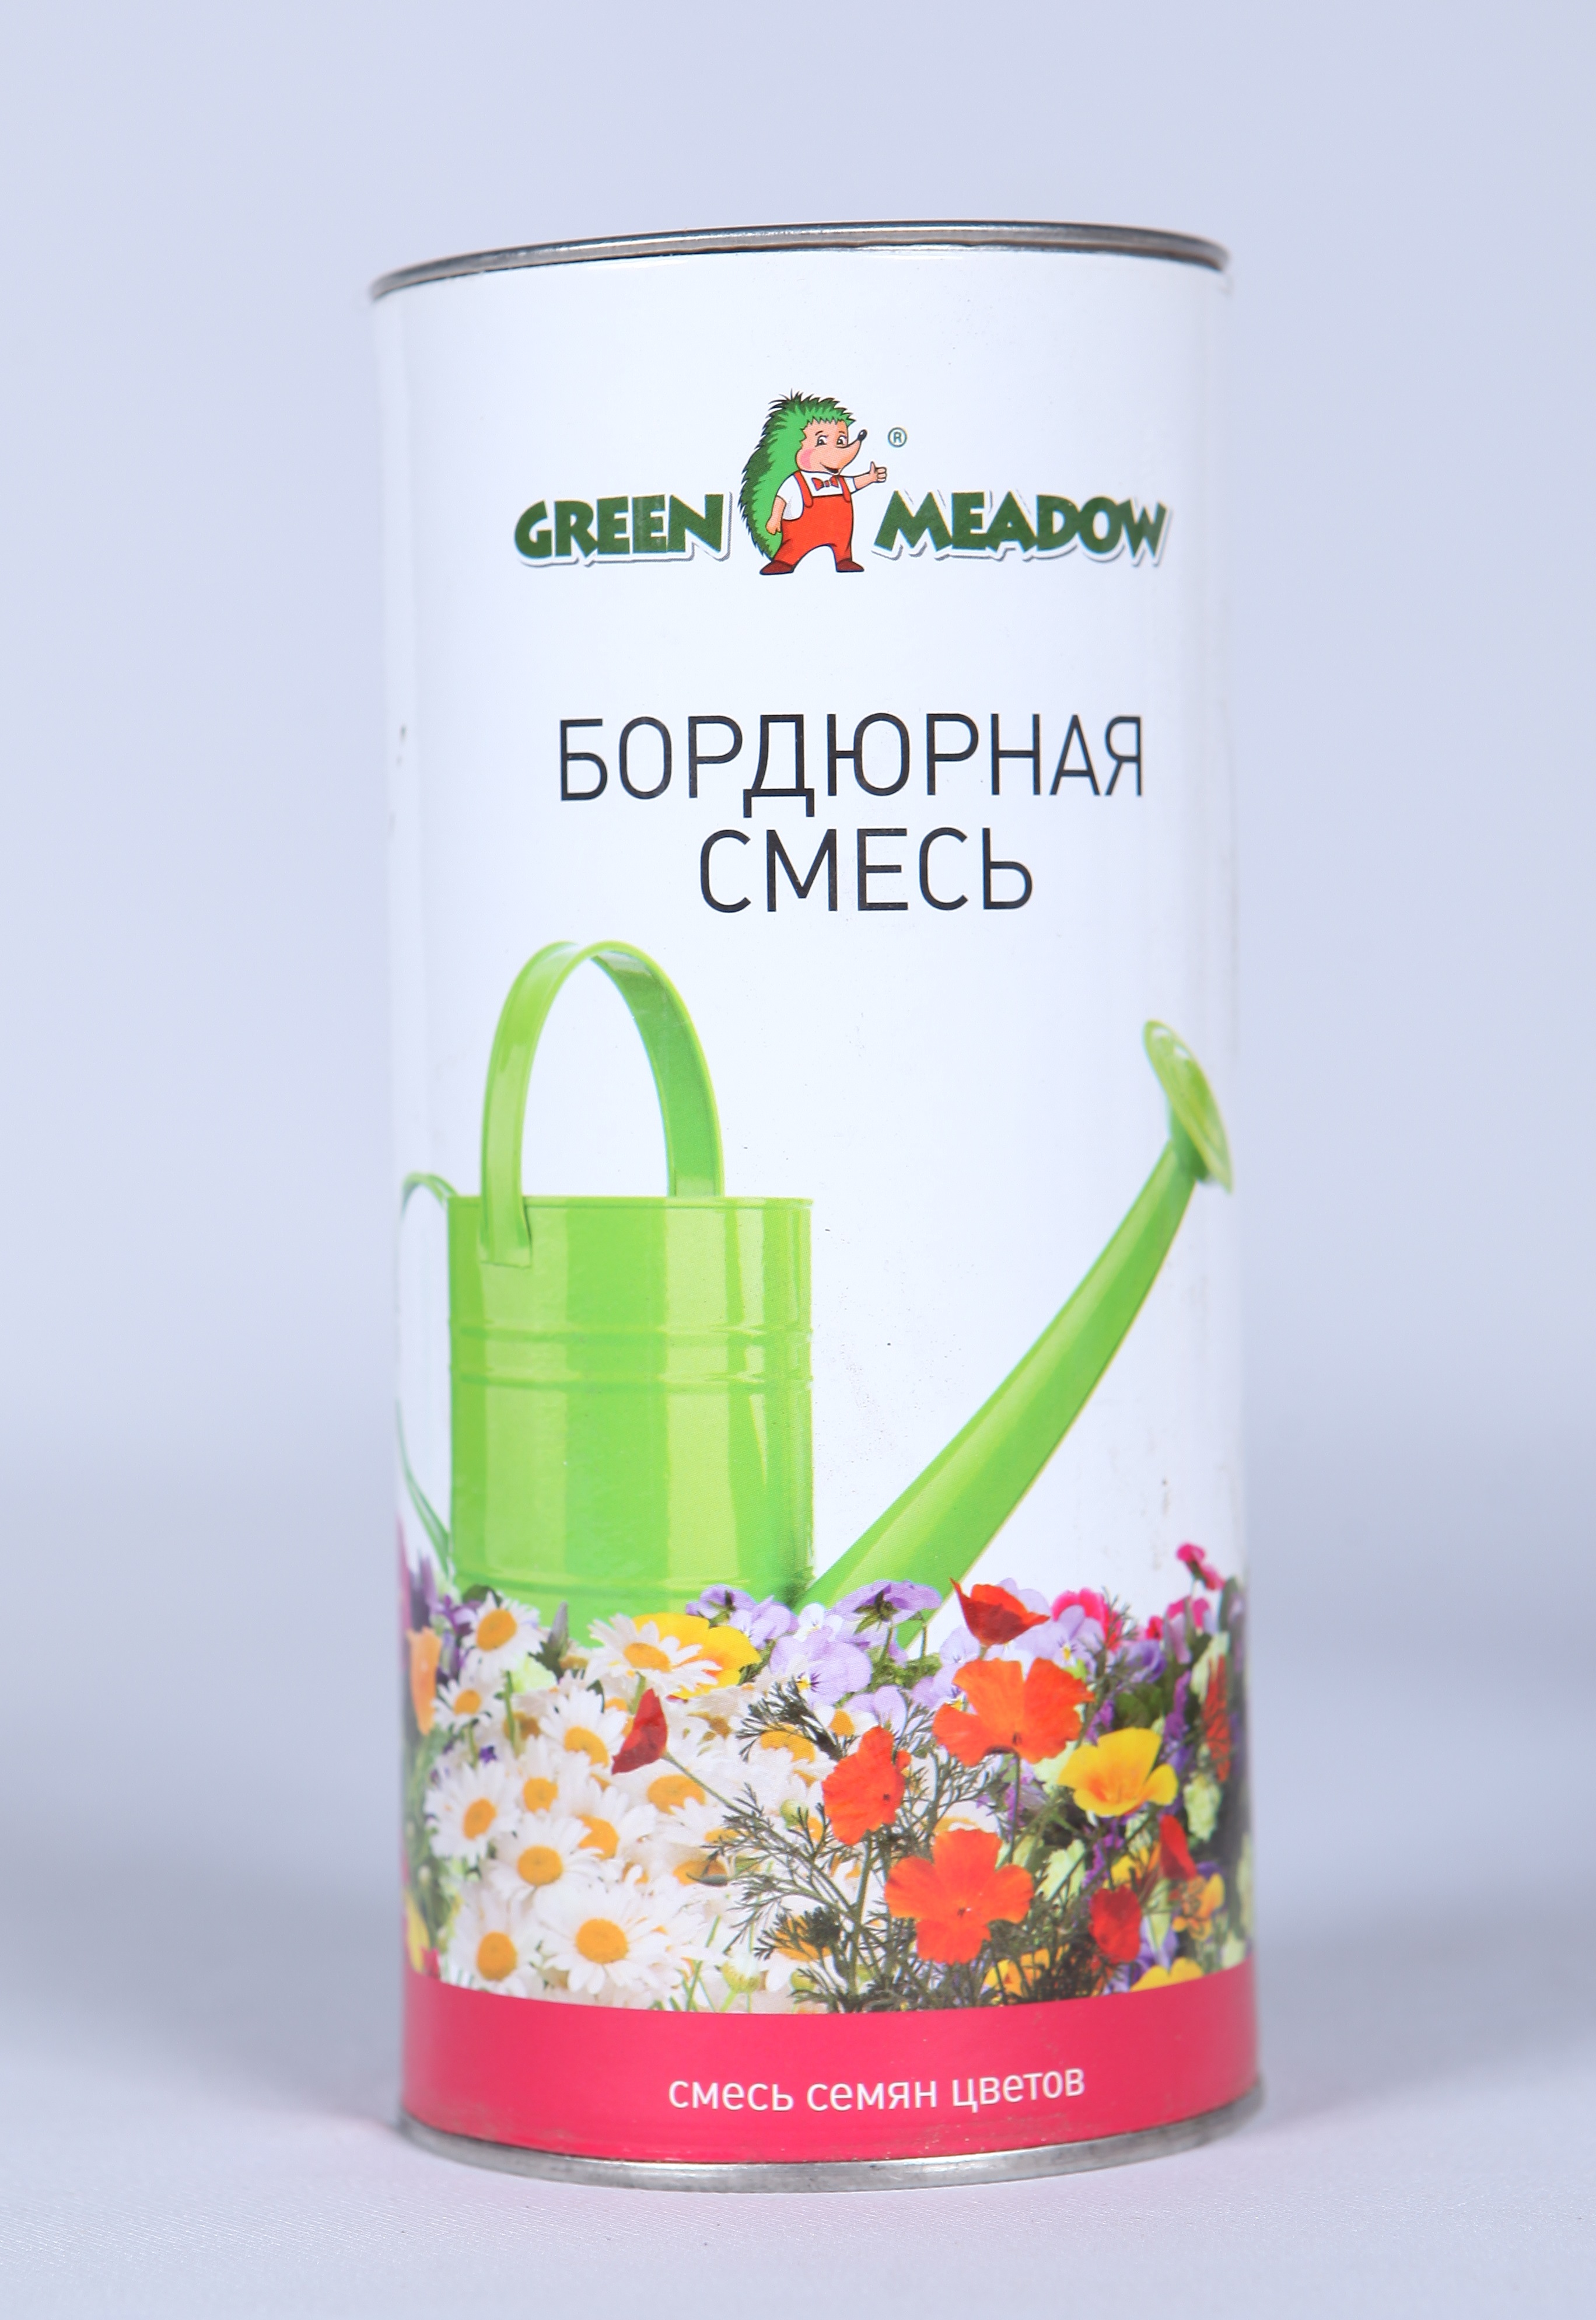 Семена смесь цветов Зеленый ковер Бордюрная смесь 186603 1 уп.